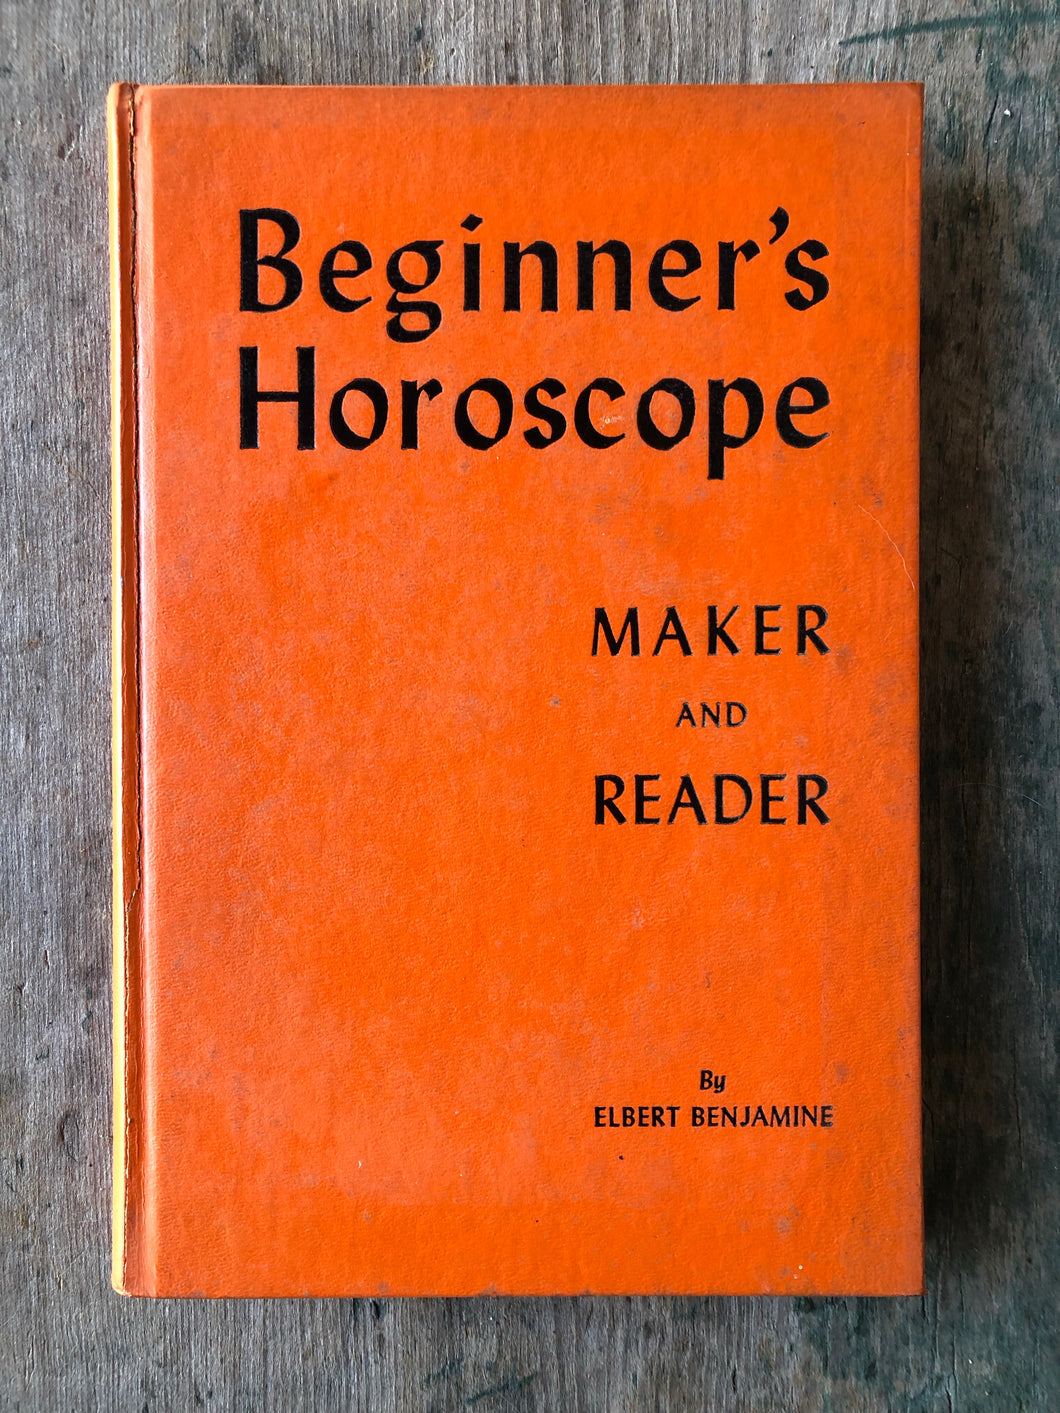 Beginner’s Horoscope Maker and Reader. by Elbert Benjamine (C. C. Zain)